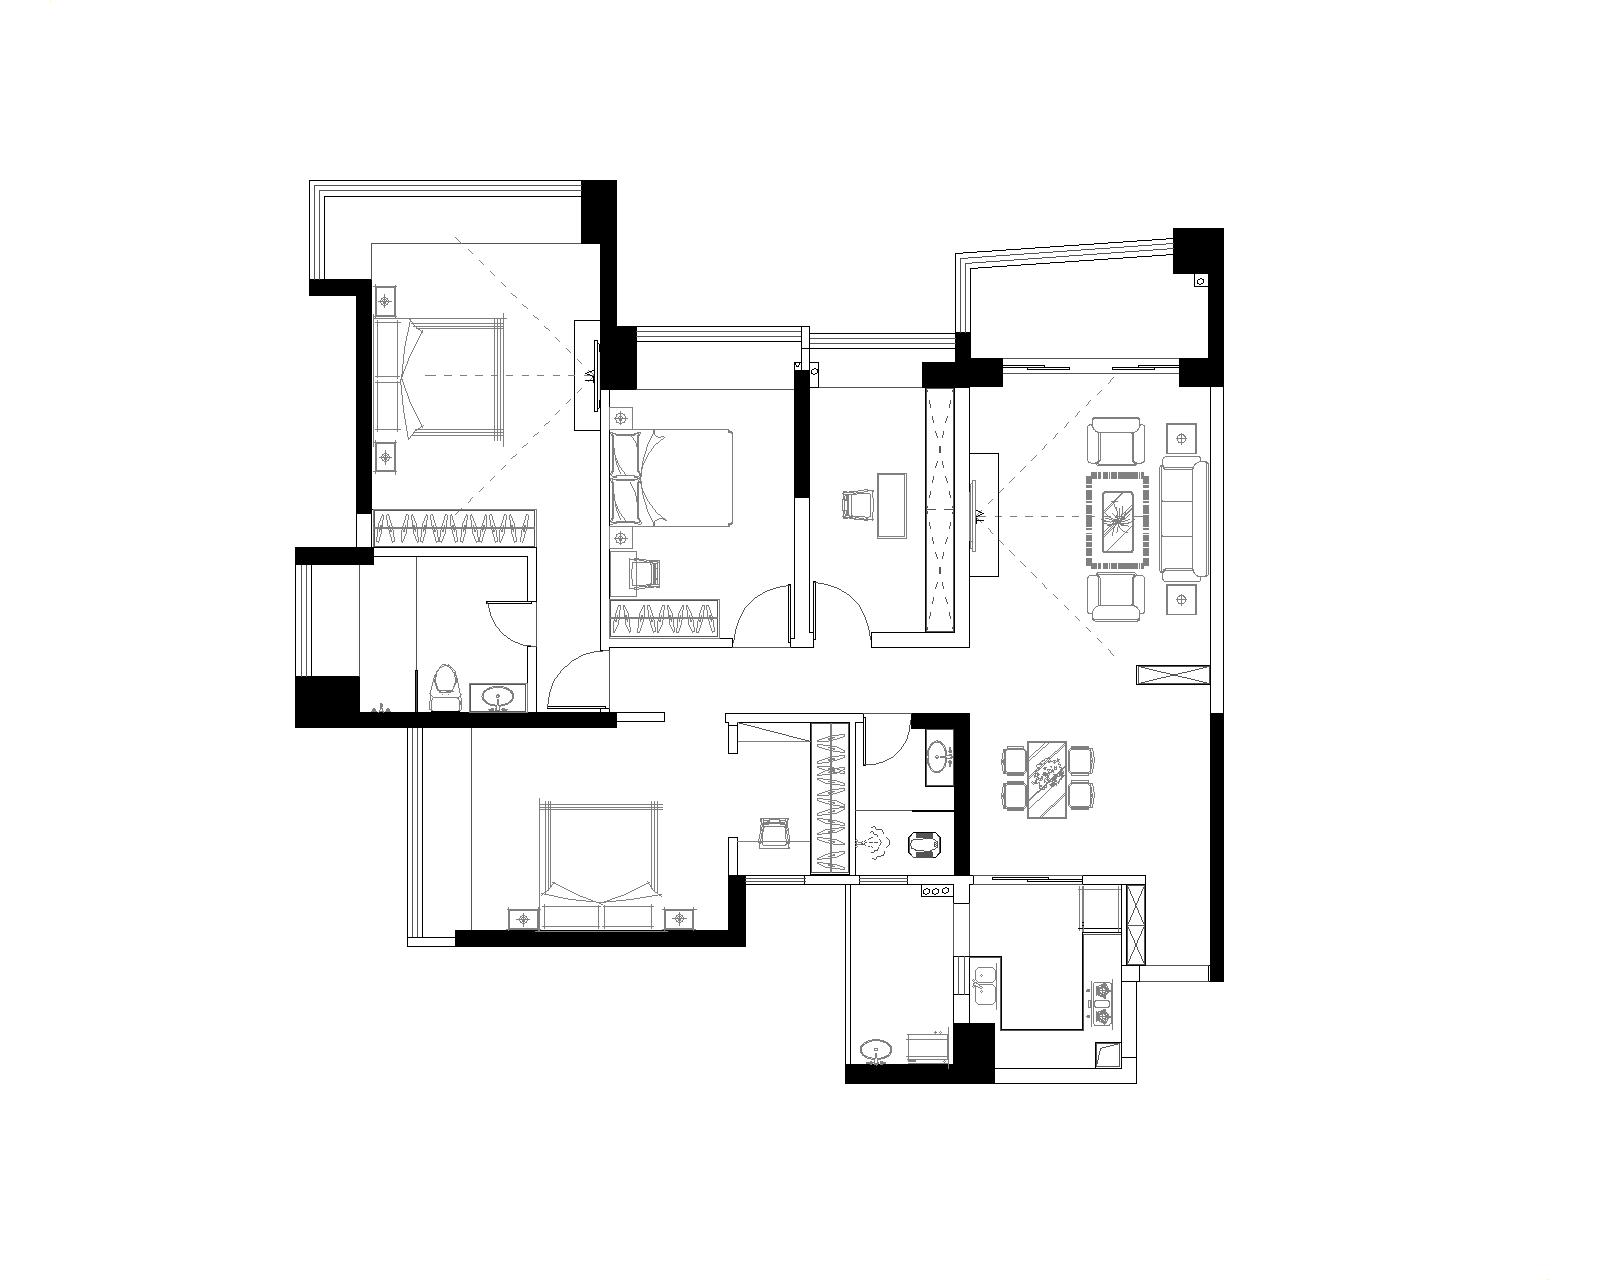 御景名门 简约 欧式 4居 家居 生活 装修 报价 设计 户型图图片来自徐丽娟在简欧风格-140平米-4居室的分享